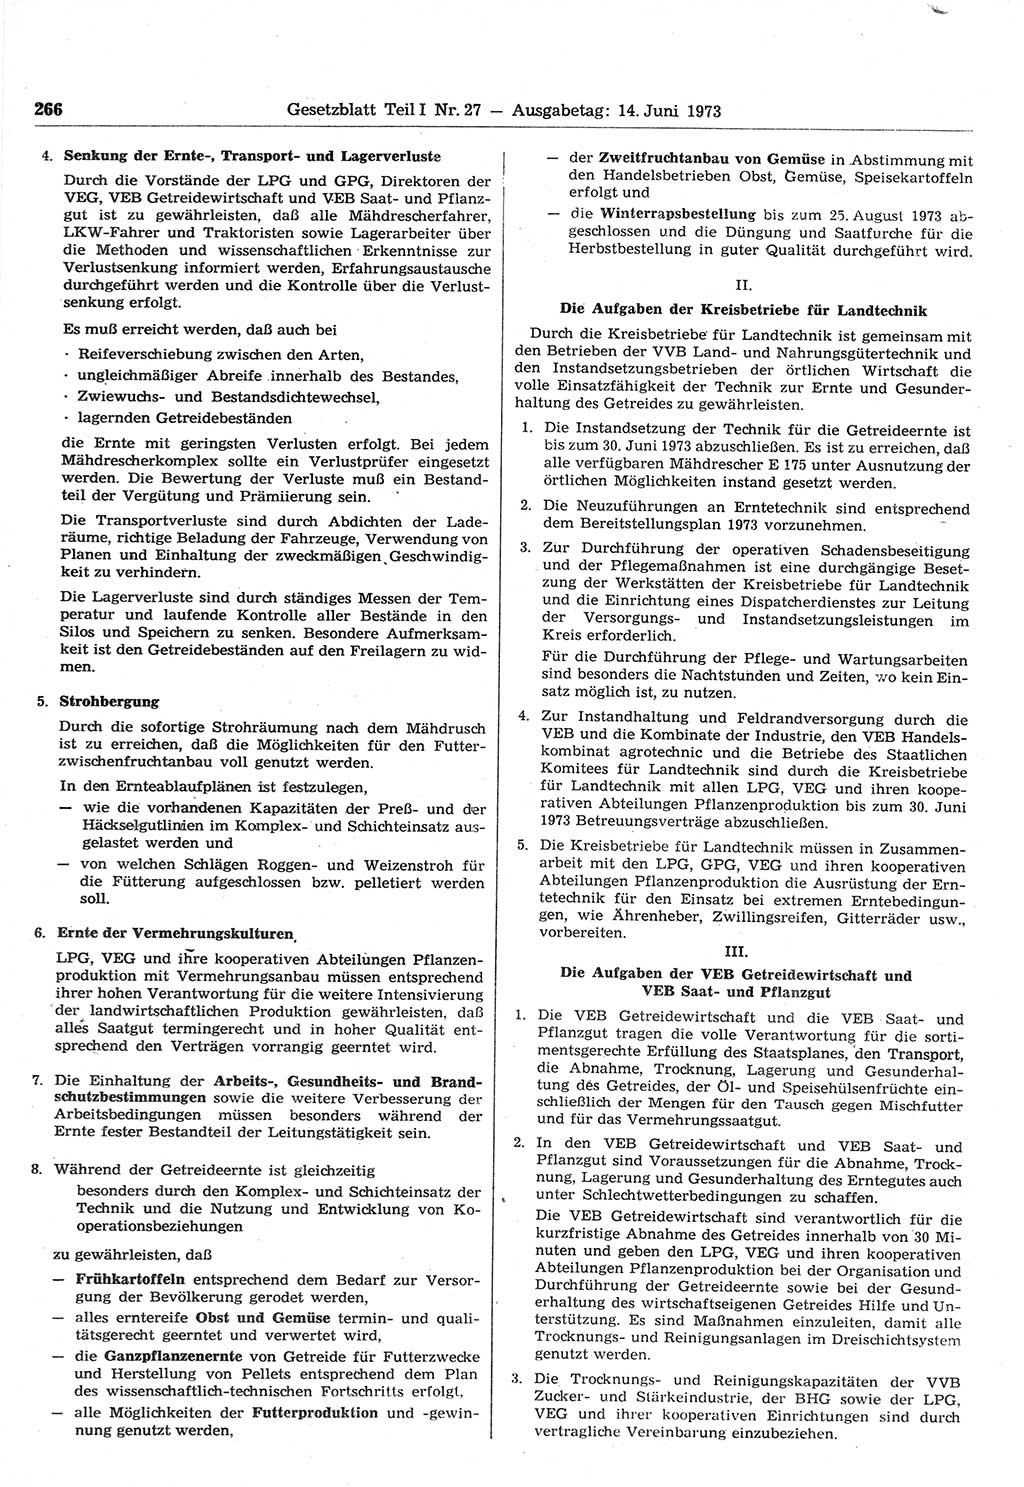 Gesetzblatt (GBl.) der Deutschen Demokratischen Republik (DDR) Teil Ⅰ 1973, Seite 266 (GBl. DDR Ⅰ 1973, S. 266)